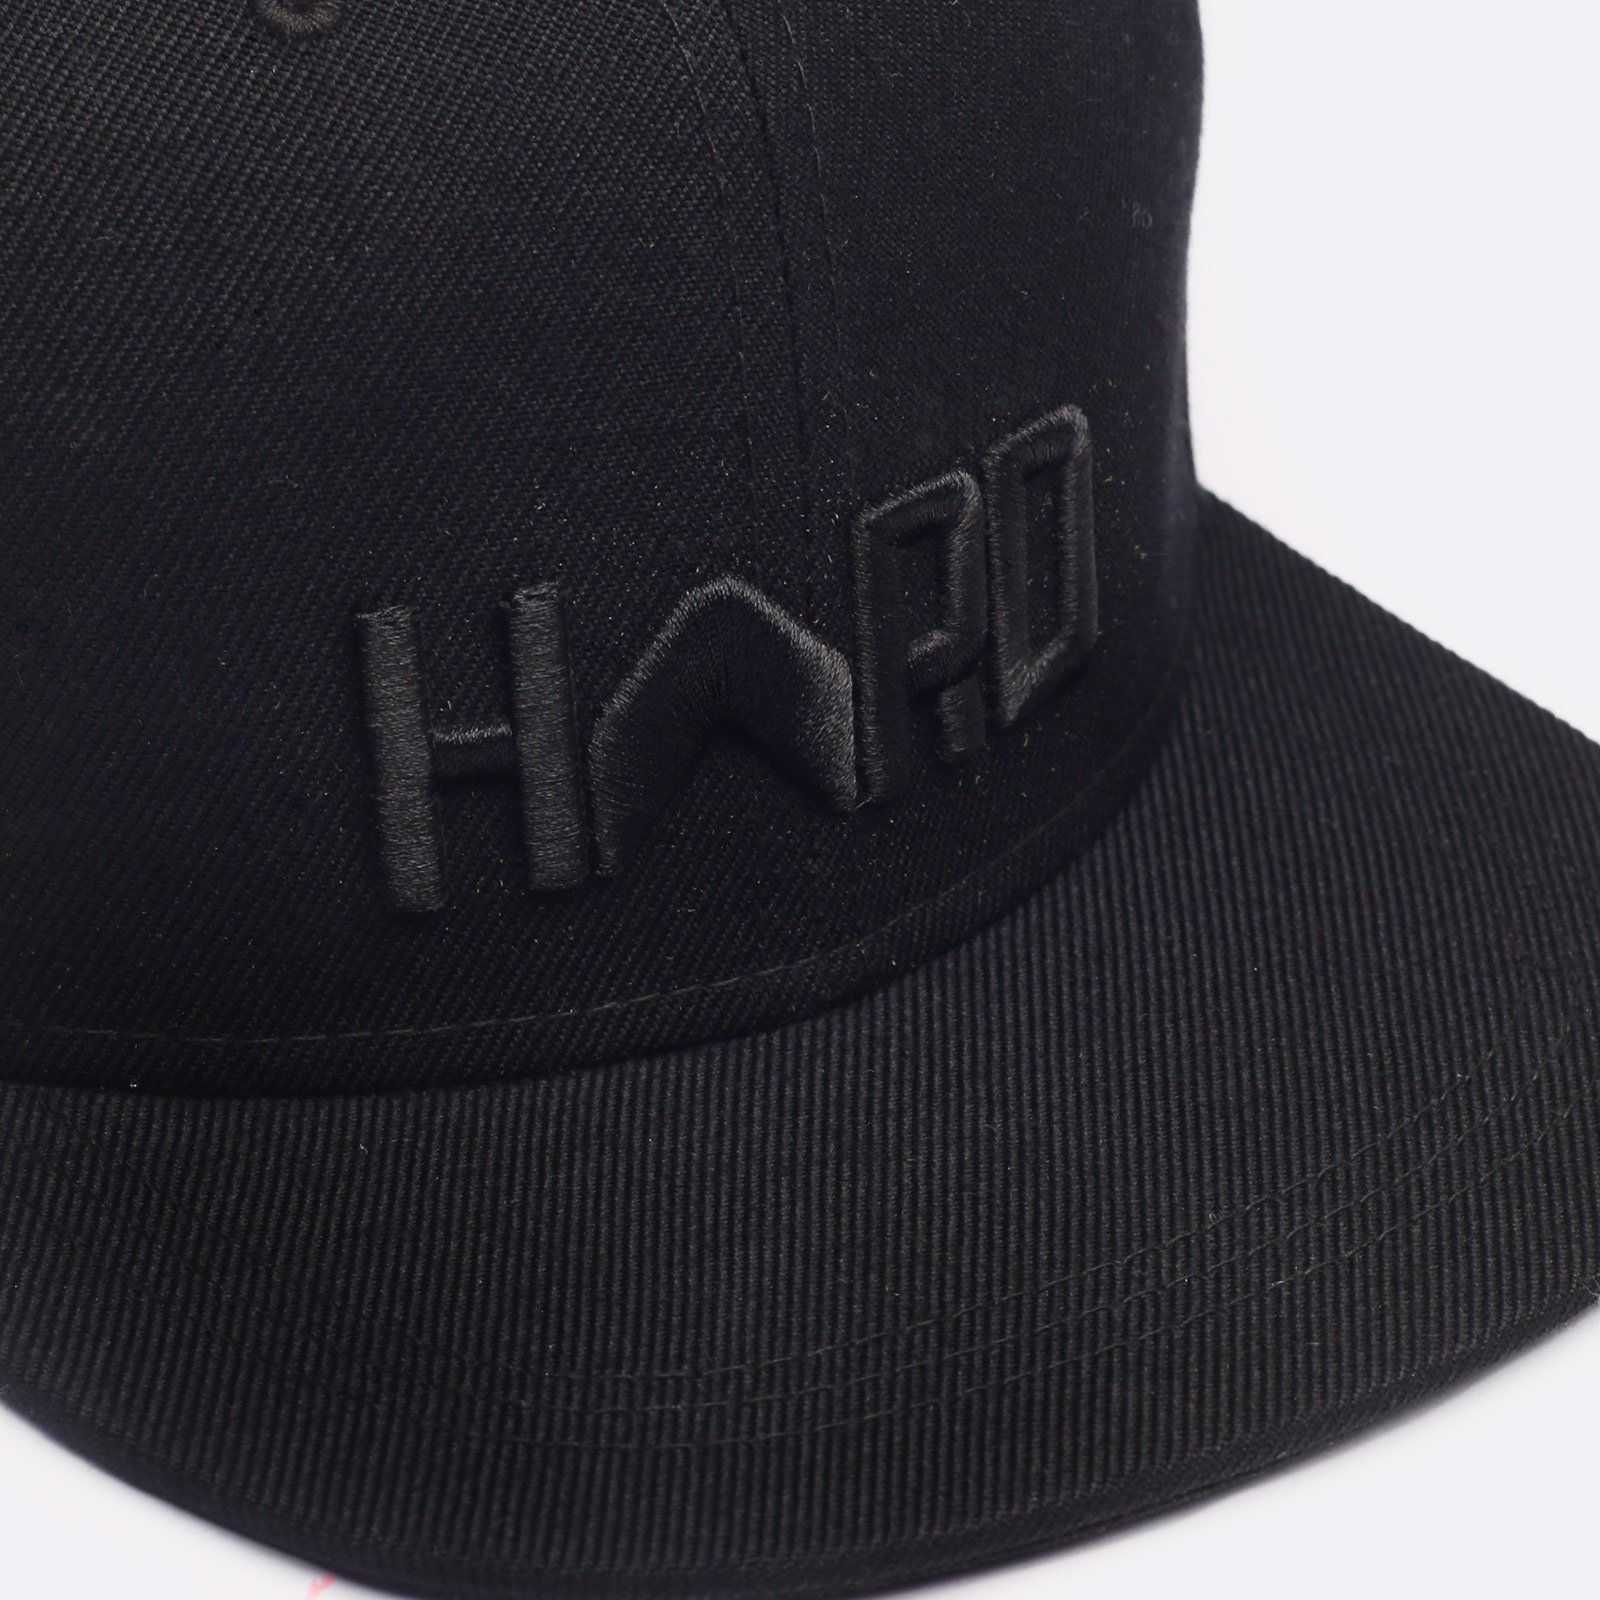 мужская кепка Hard Logo Snapback  (Hard blk/blk-0015)  - цена, описание, фото 3